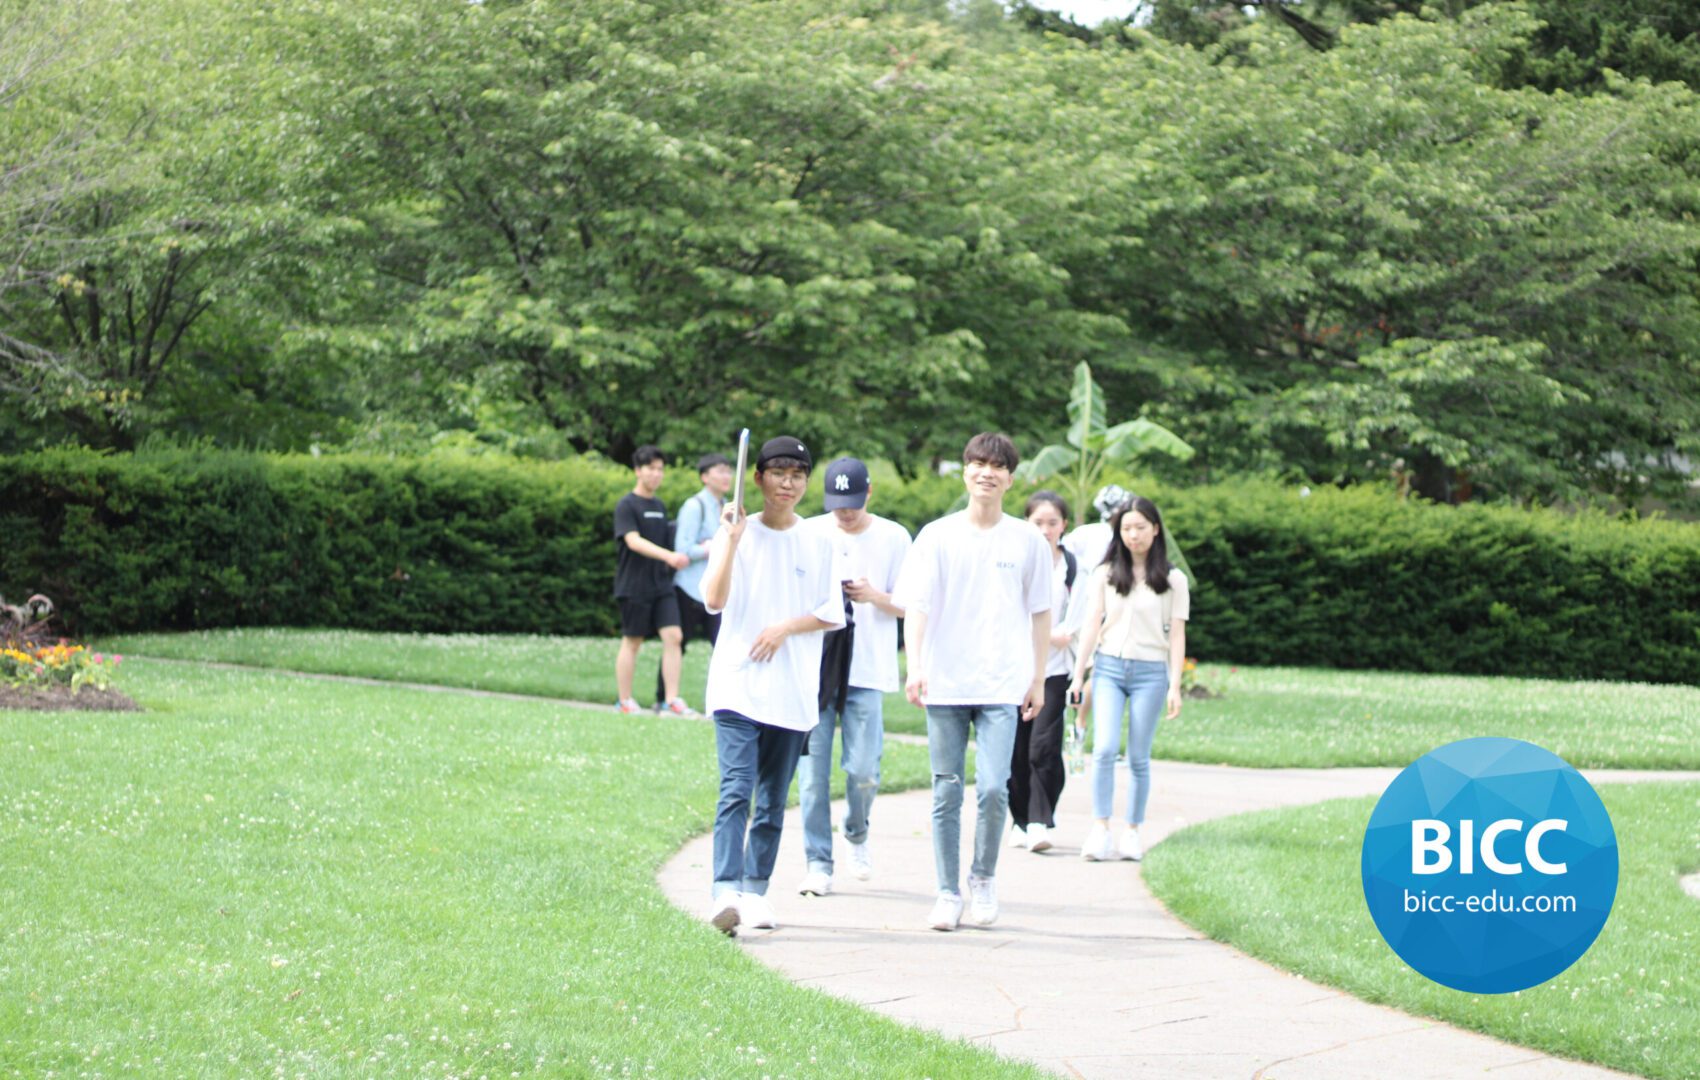 Students walking on the walkway